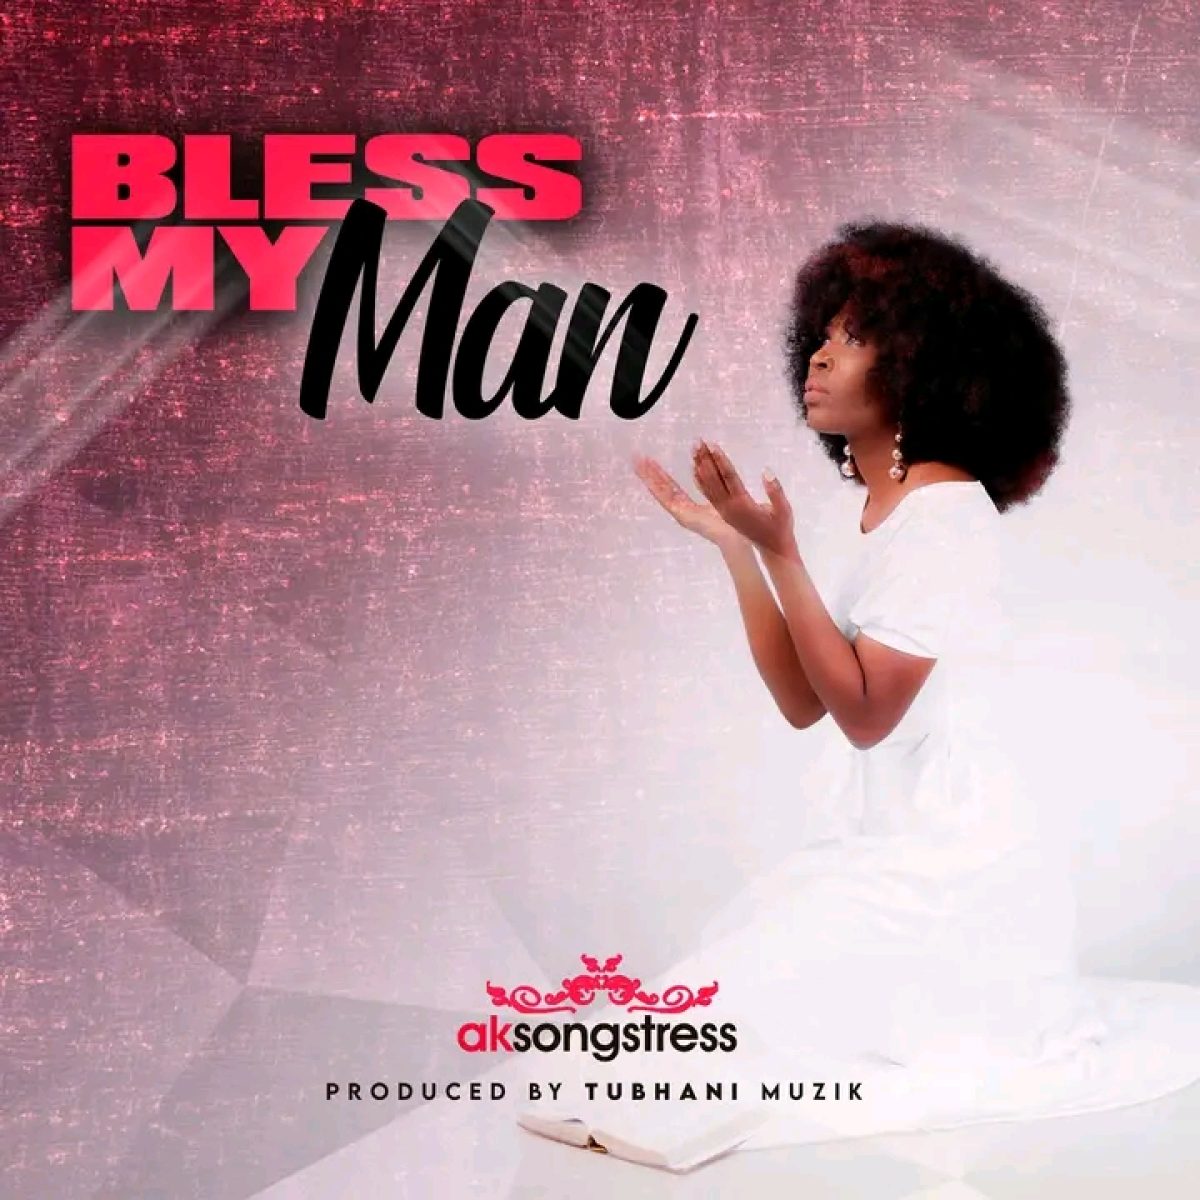 AK Songstress – Bless My Man mp3 download